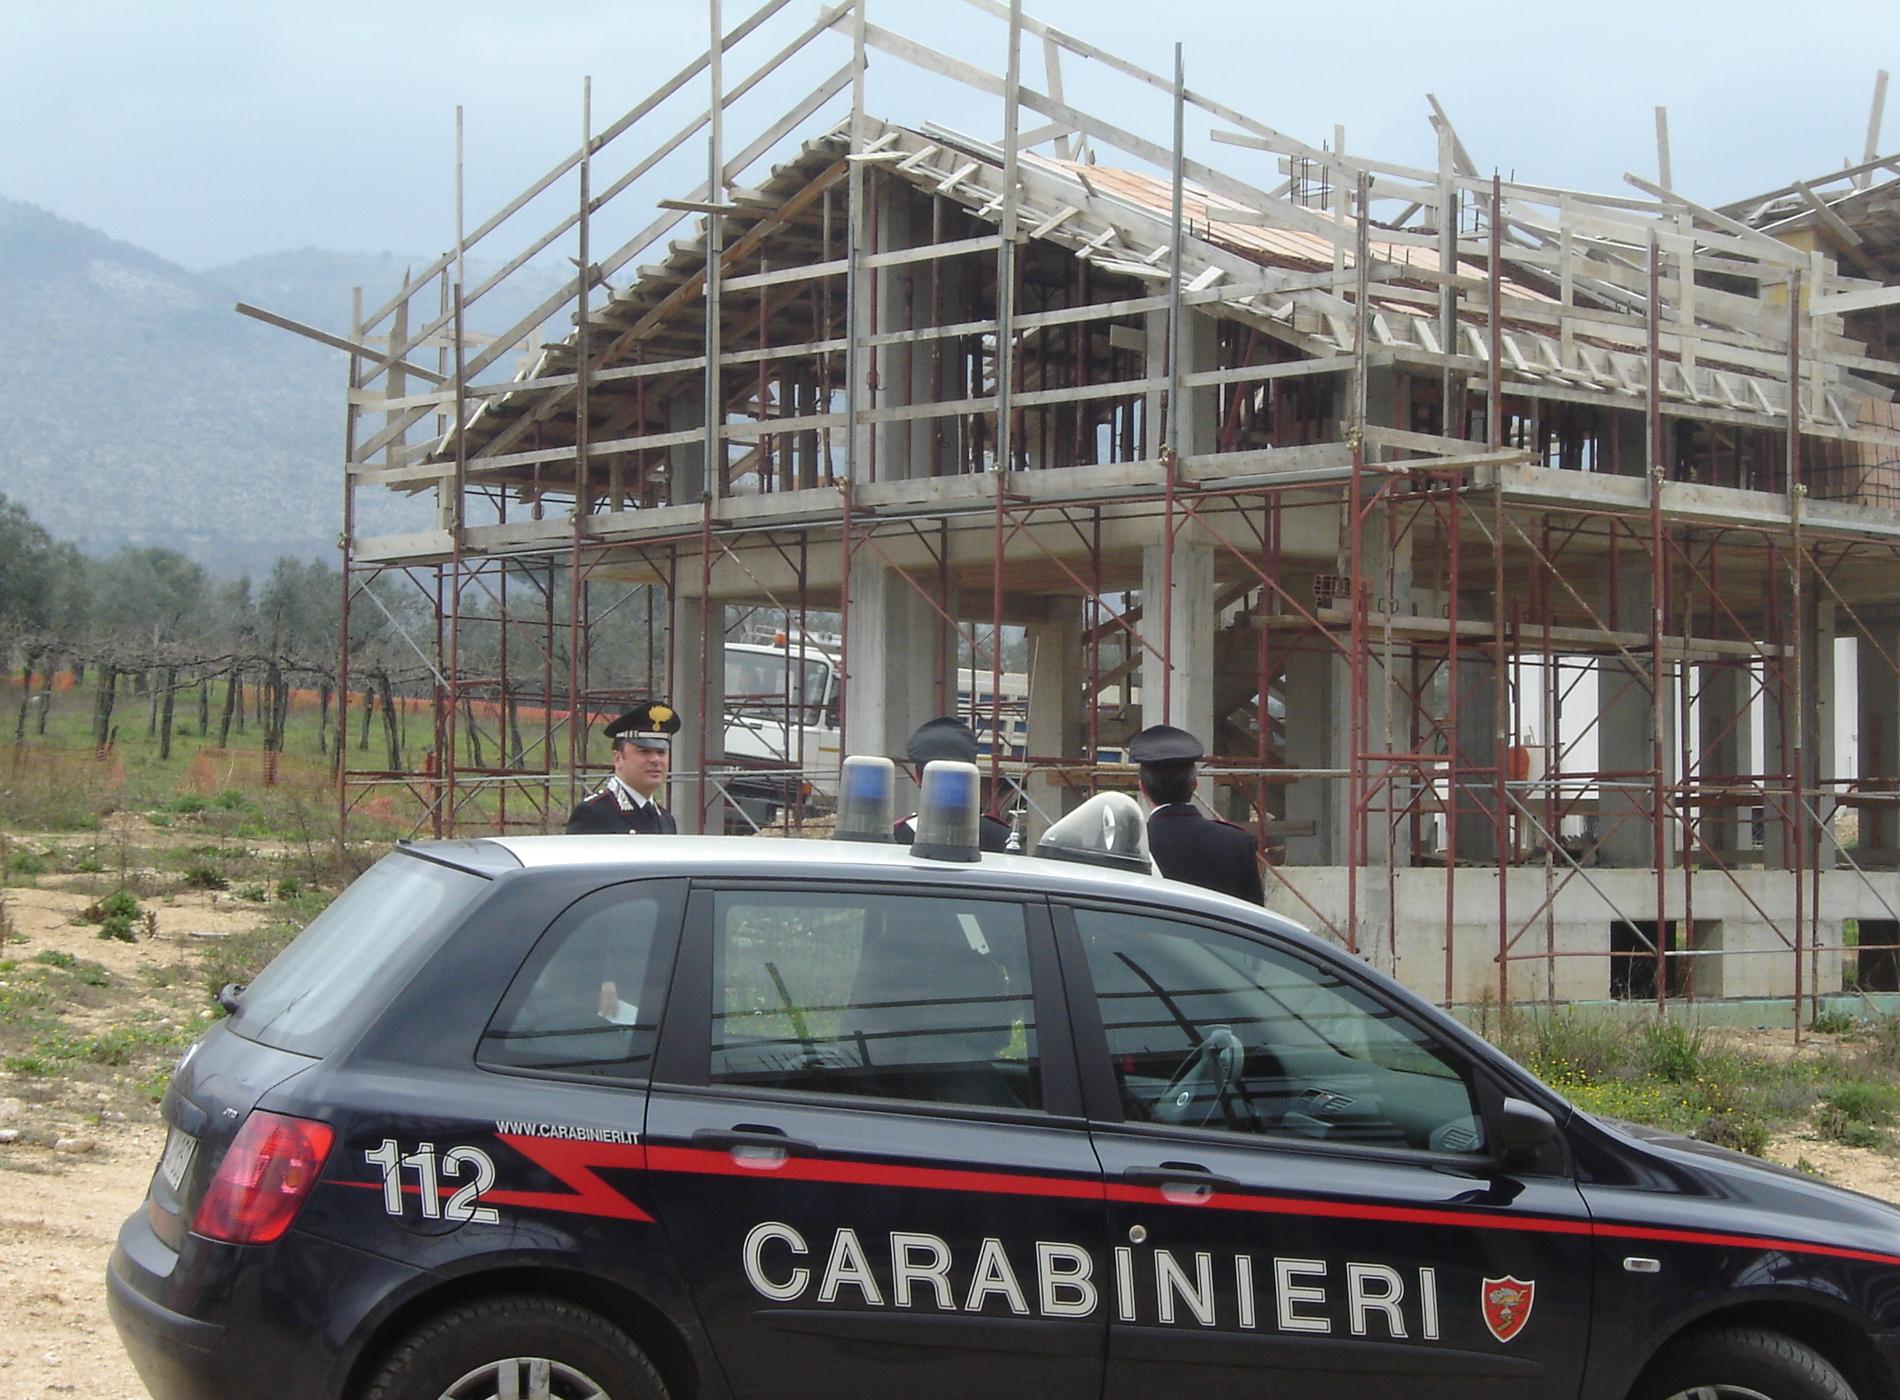  Furti di utensili per l’edilizia a Sant’Antonio Abate e Vico Equense: arrestati 2 uomini di San Giorgio a Cremano